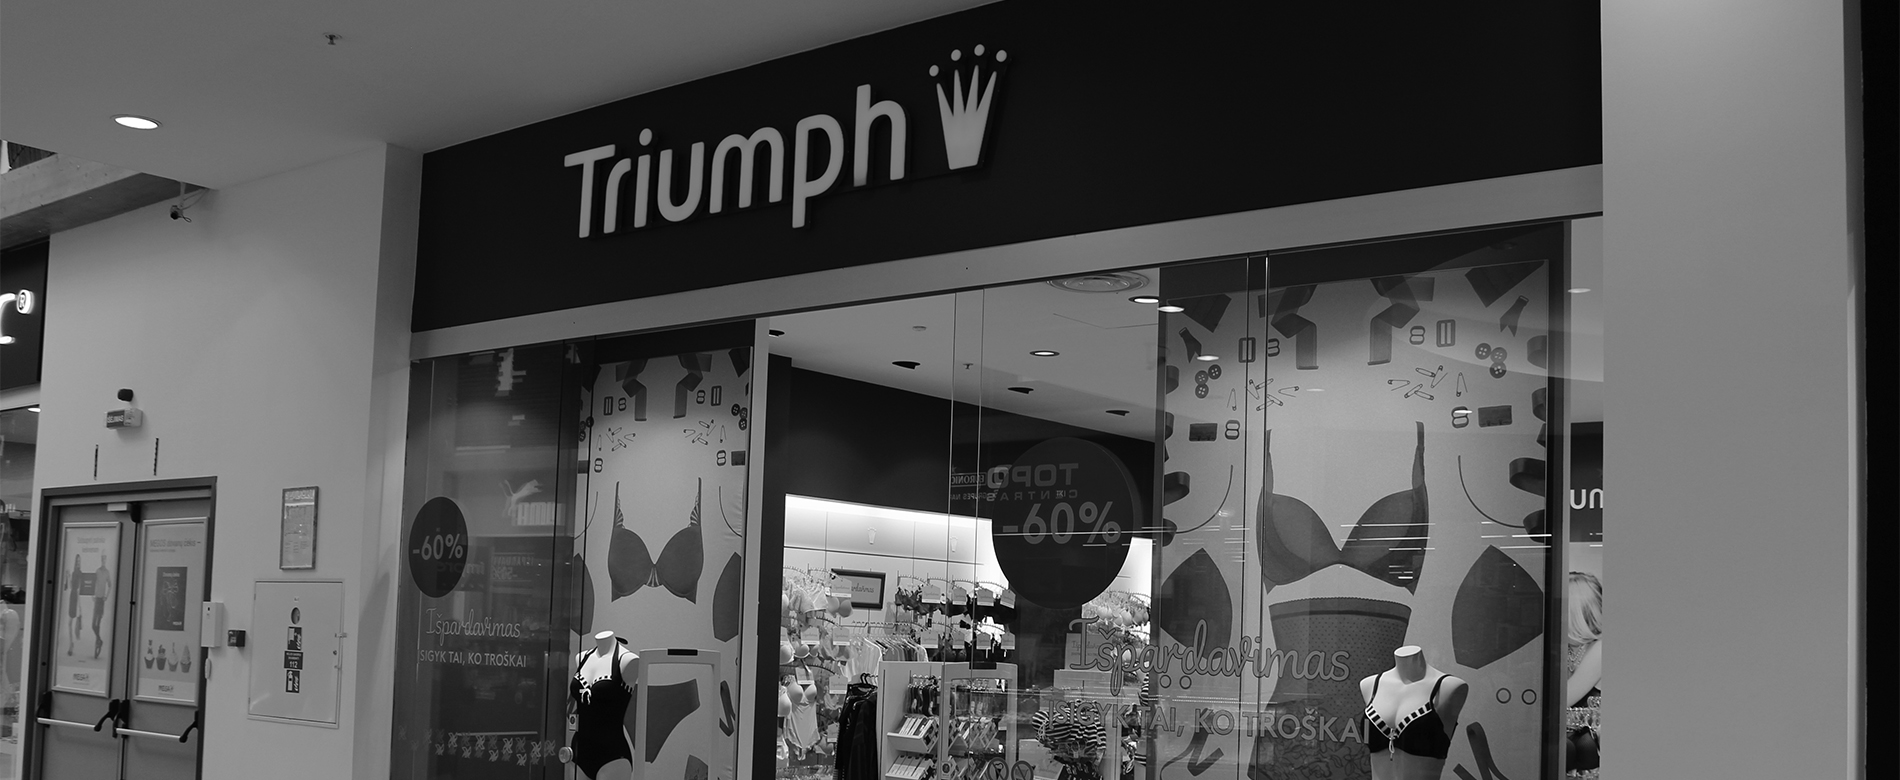 Lankytojų srauto skaičiavimo sprendimas "Triumph" parduotuvėse